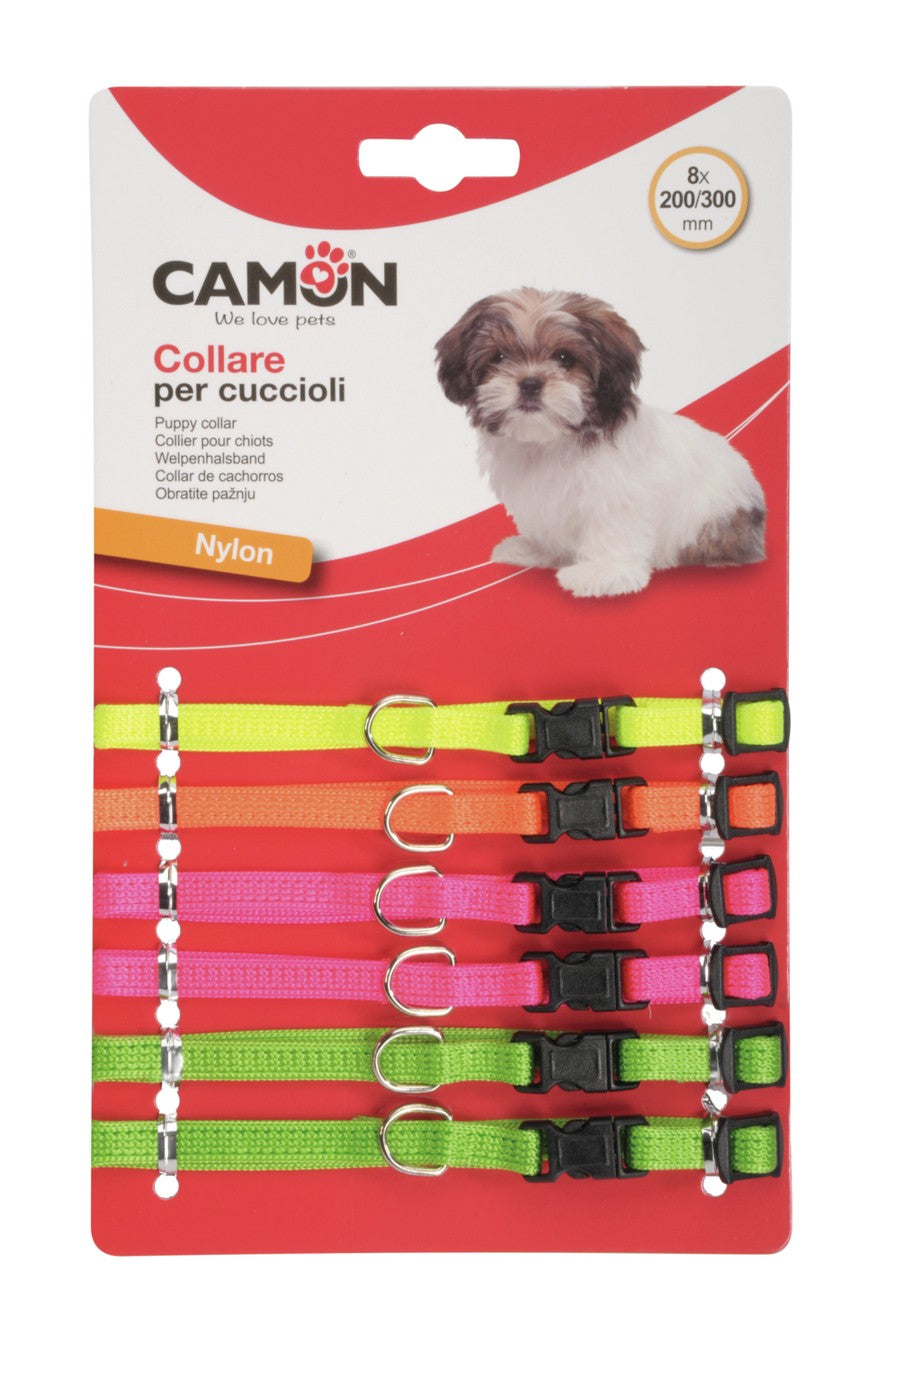 Camon Puppy Collare in Nylon Regolabile per Cuccioli 1pz